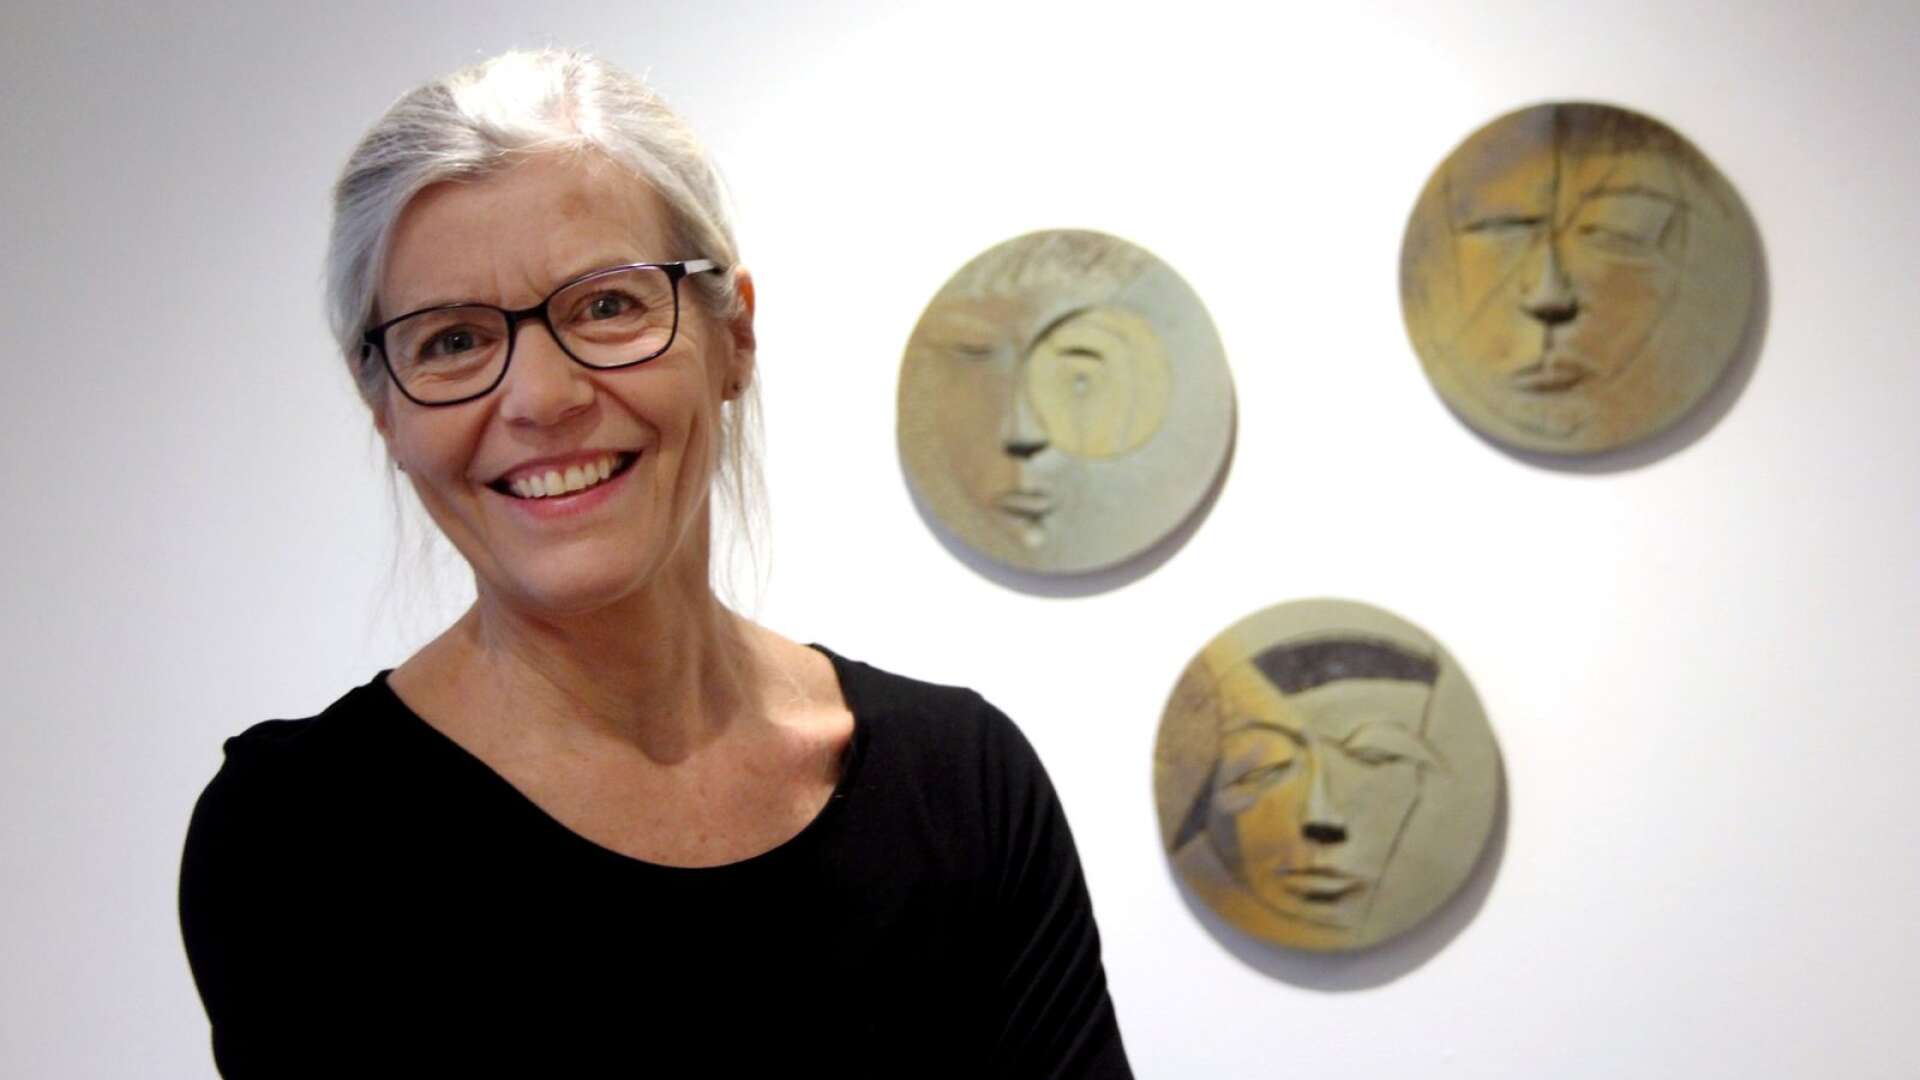 Karlstadskeramikern Karin Lööf firar jubileum med utställning i Arvika